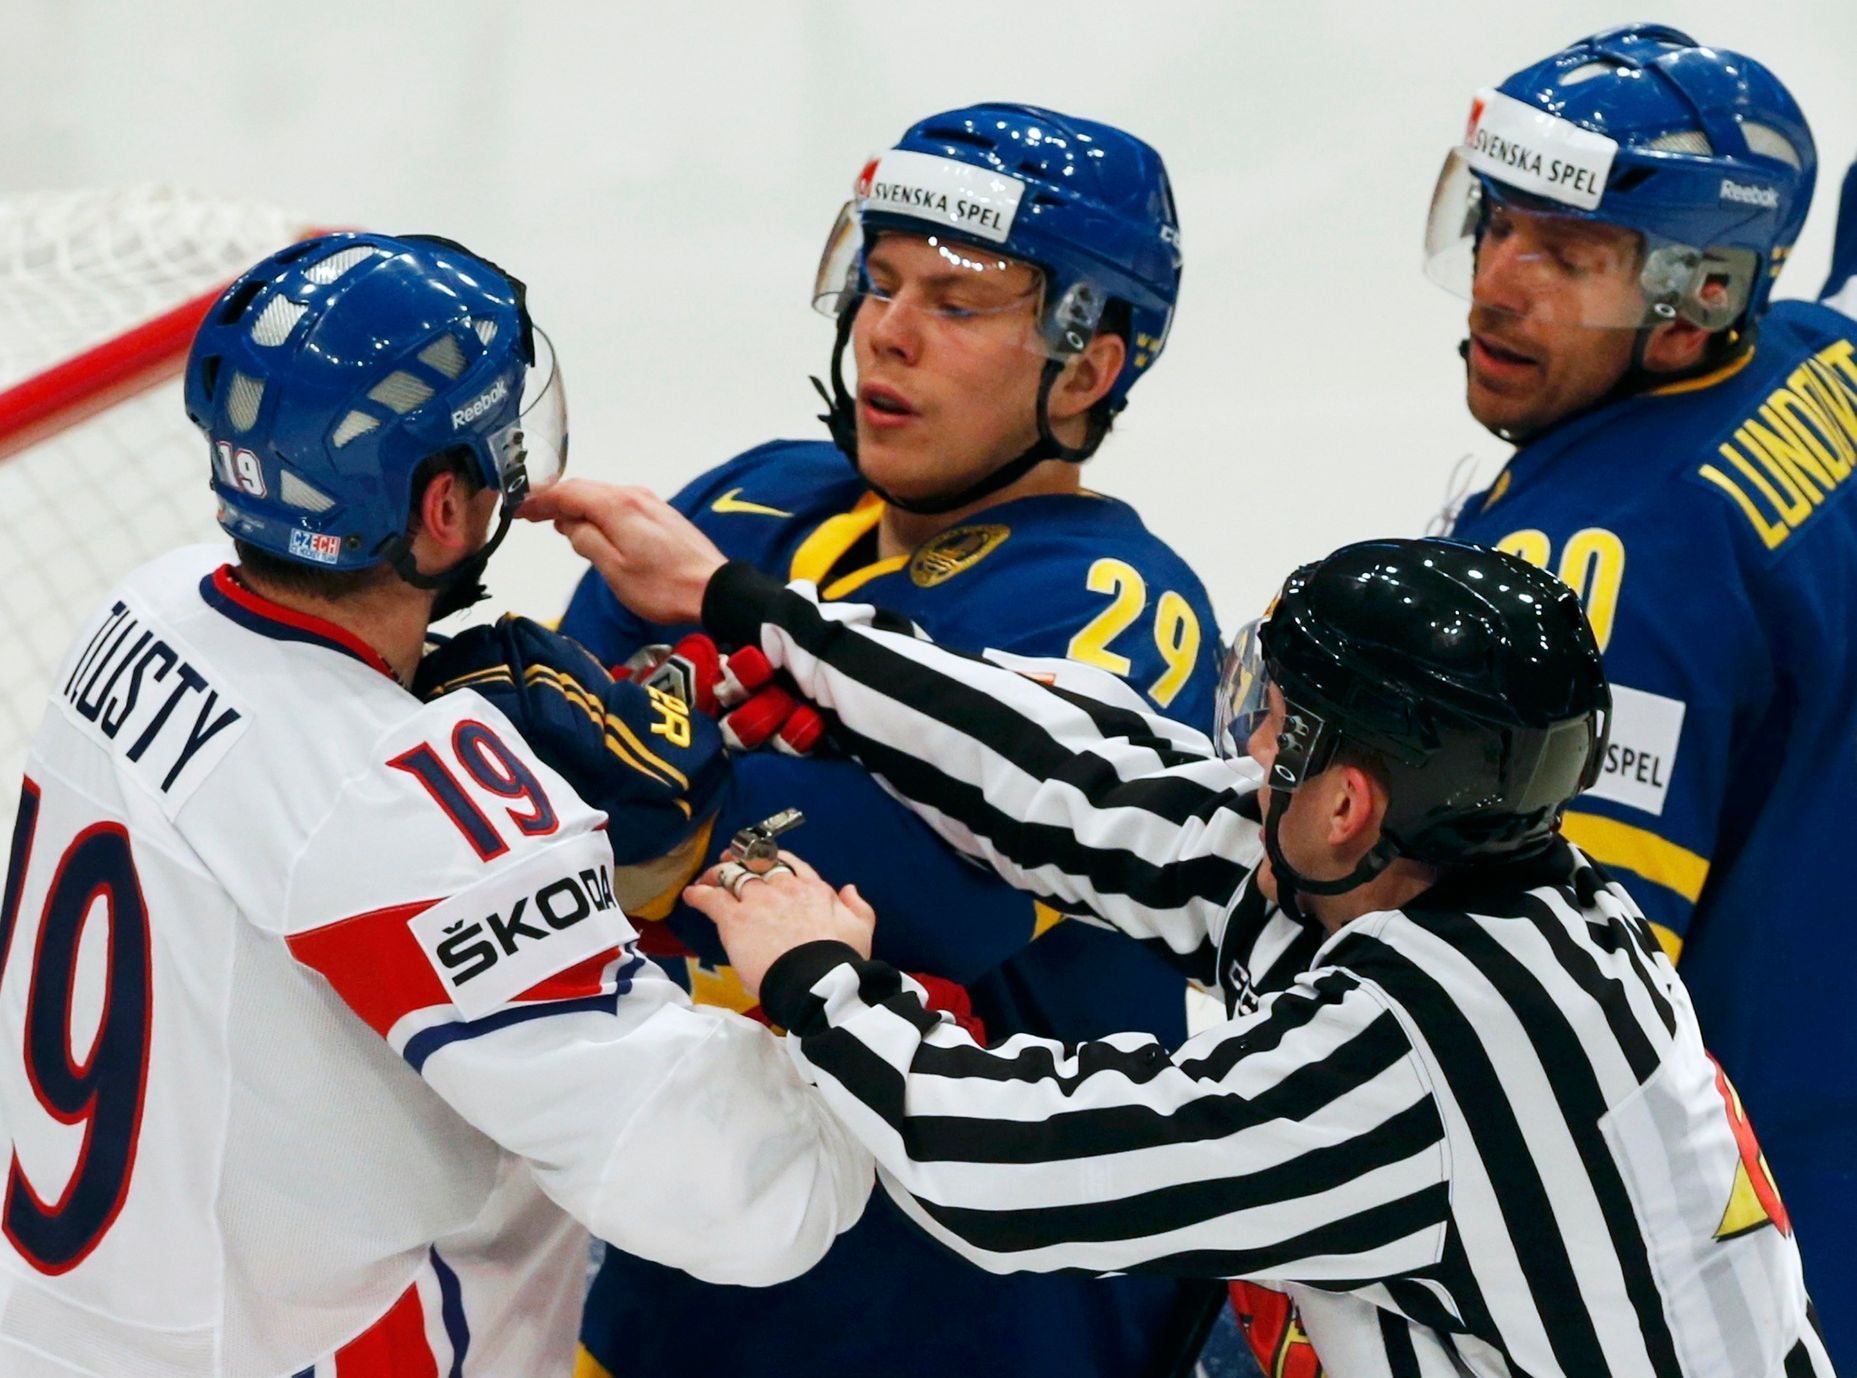 MS v hokeji 2013, Česko - Švédsko: Jiří Tlustý - Erik Gustafsson